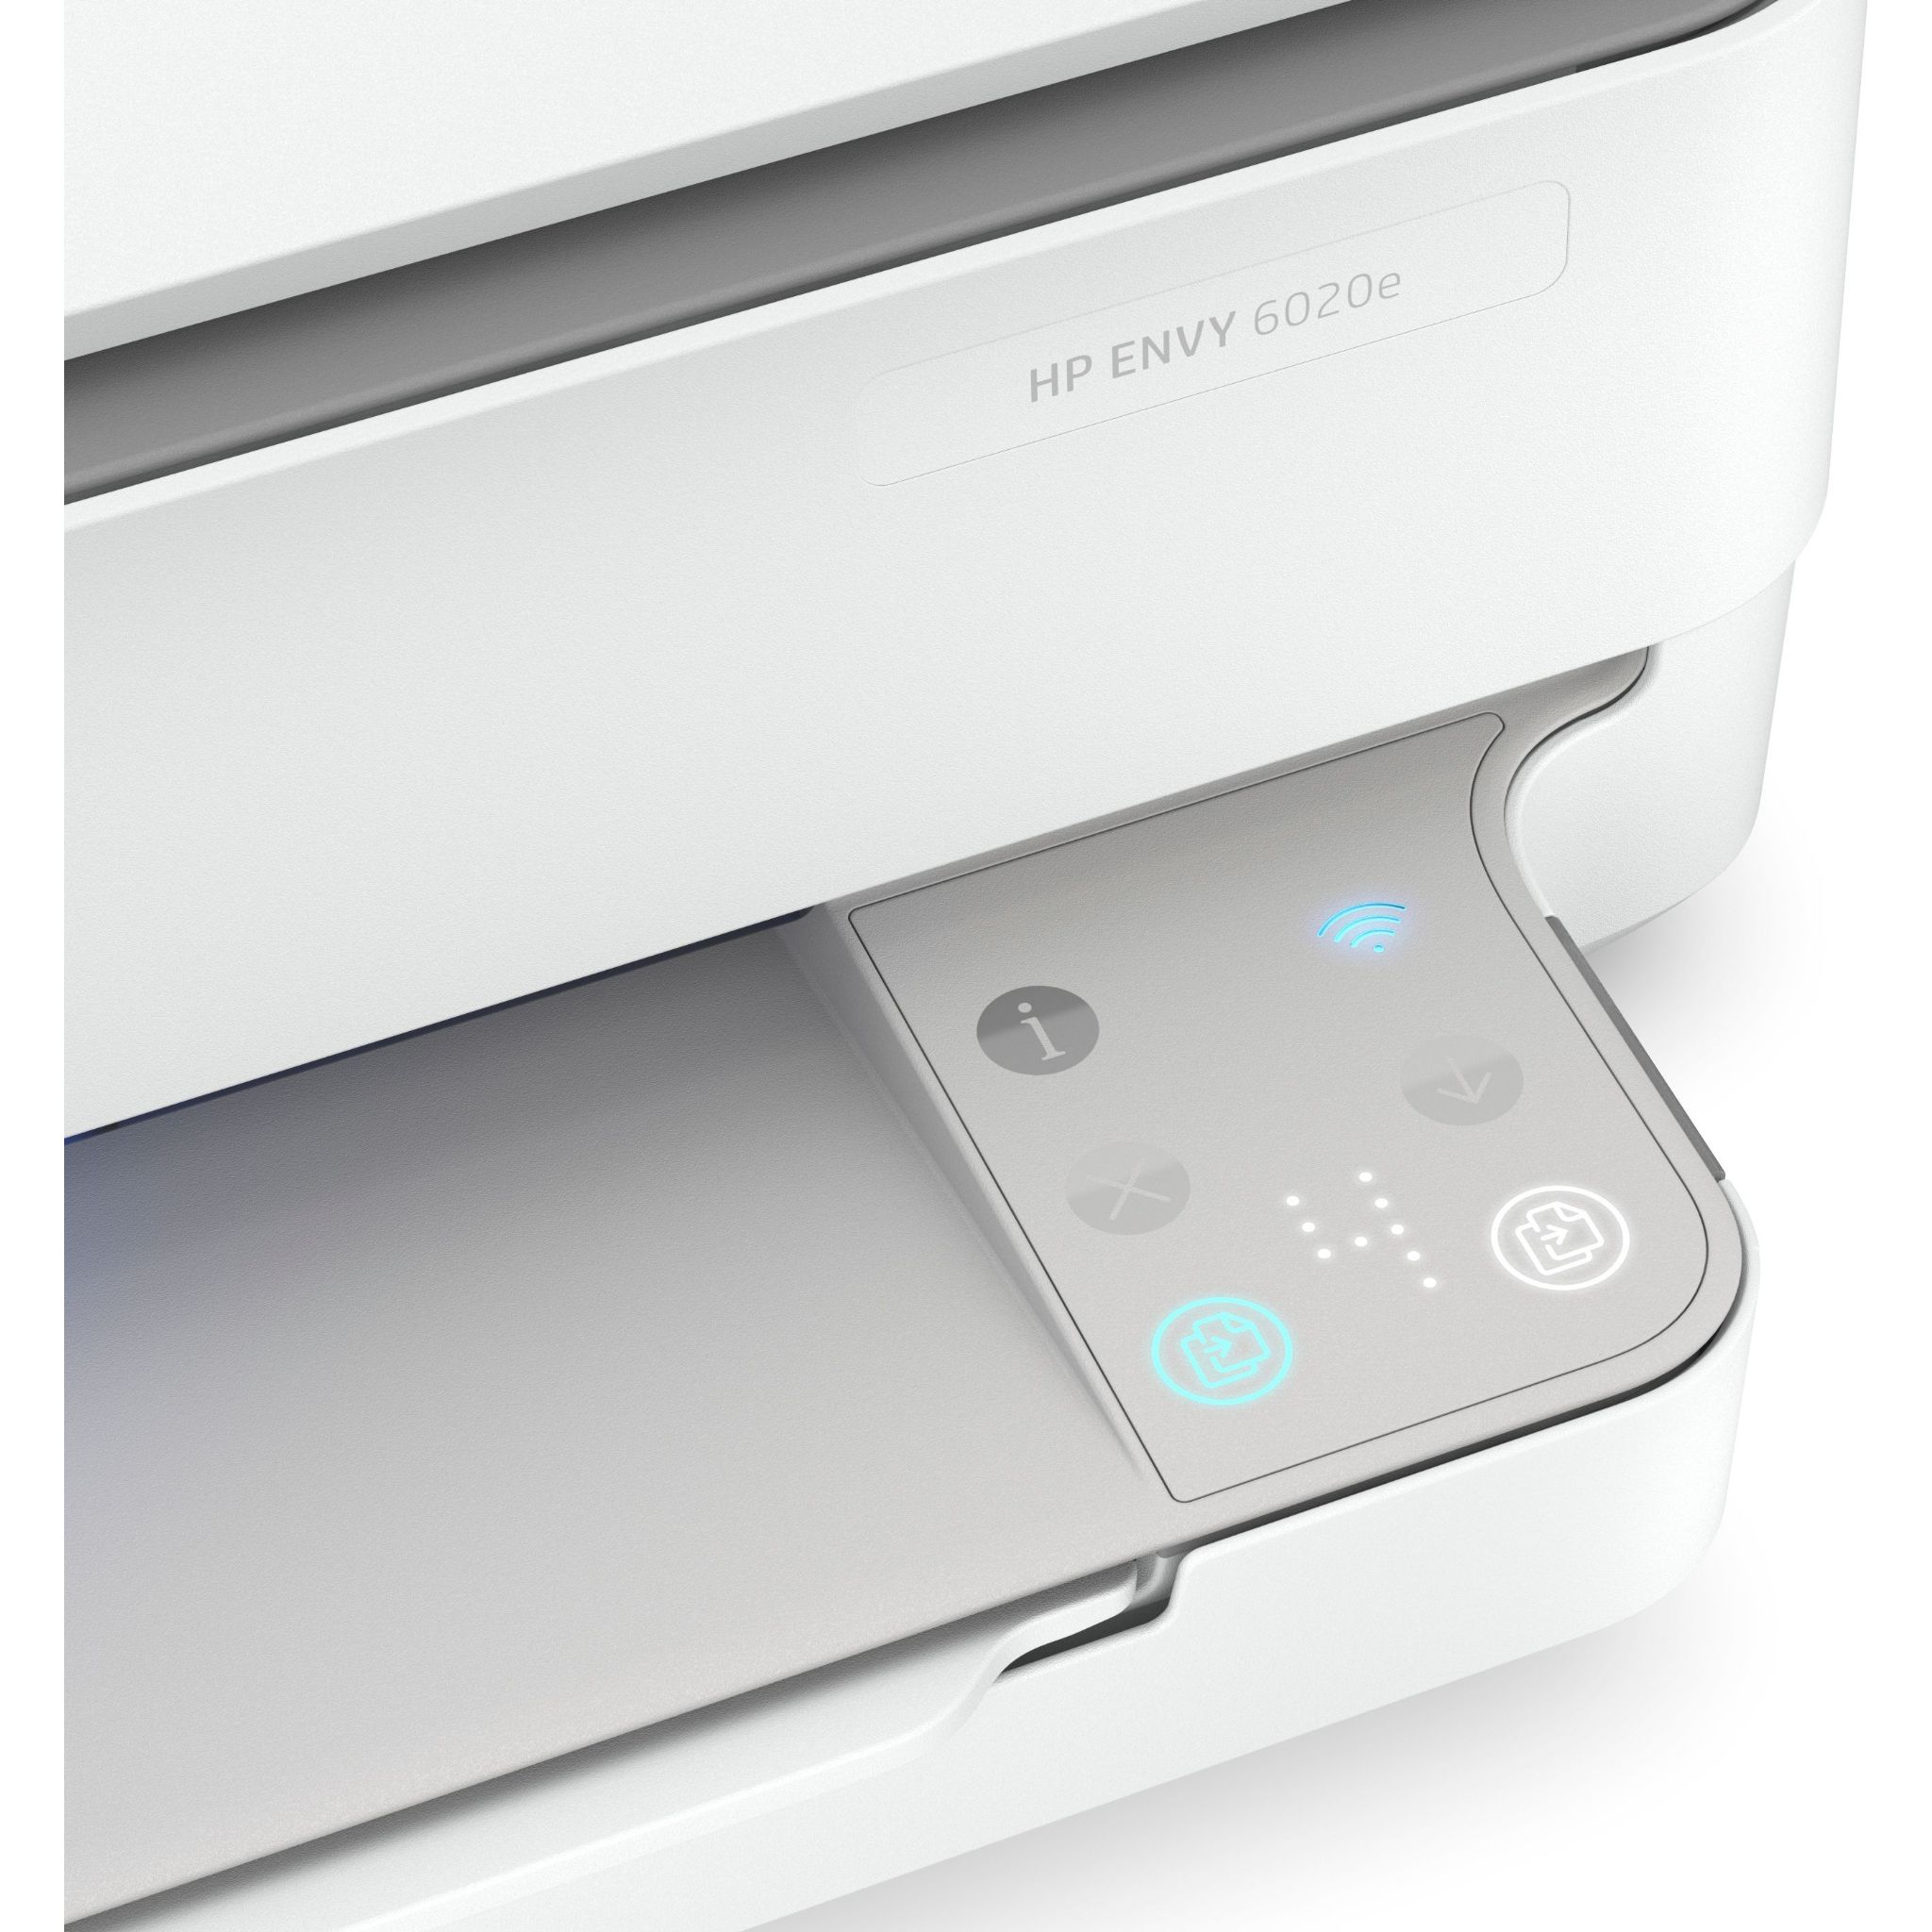 HP Envy 6020e Inkjet WLAN Multifunktionsdrucker